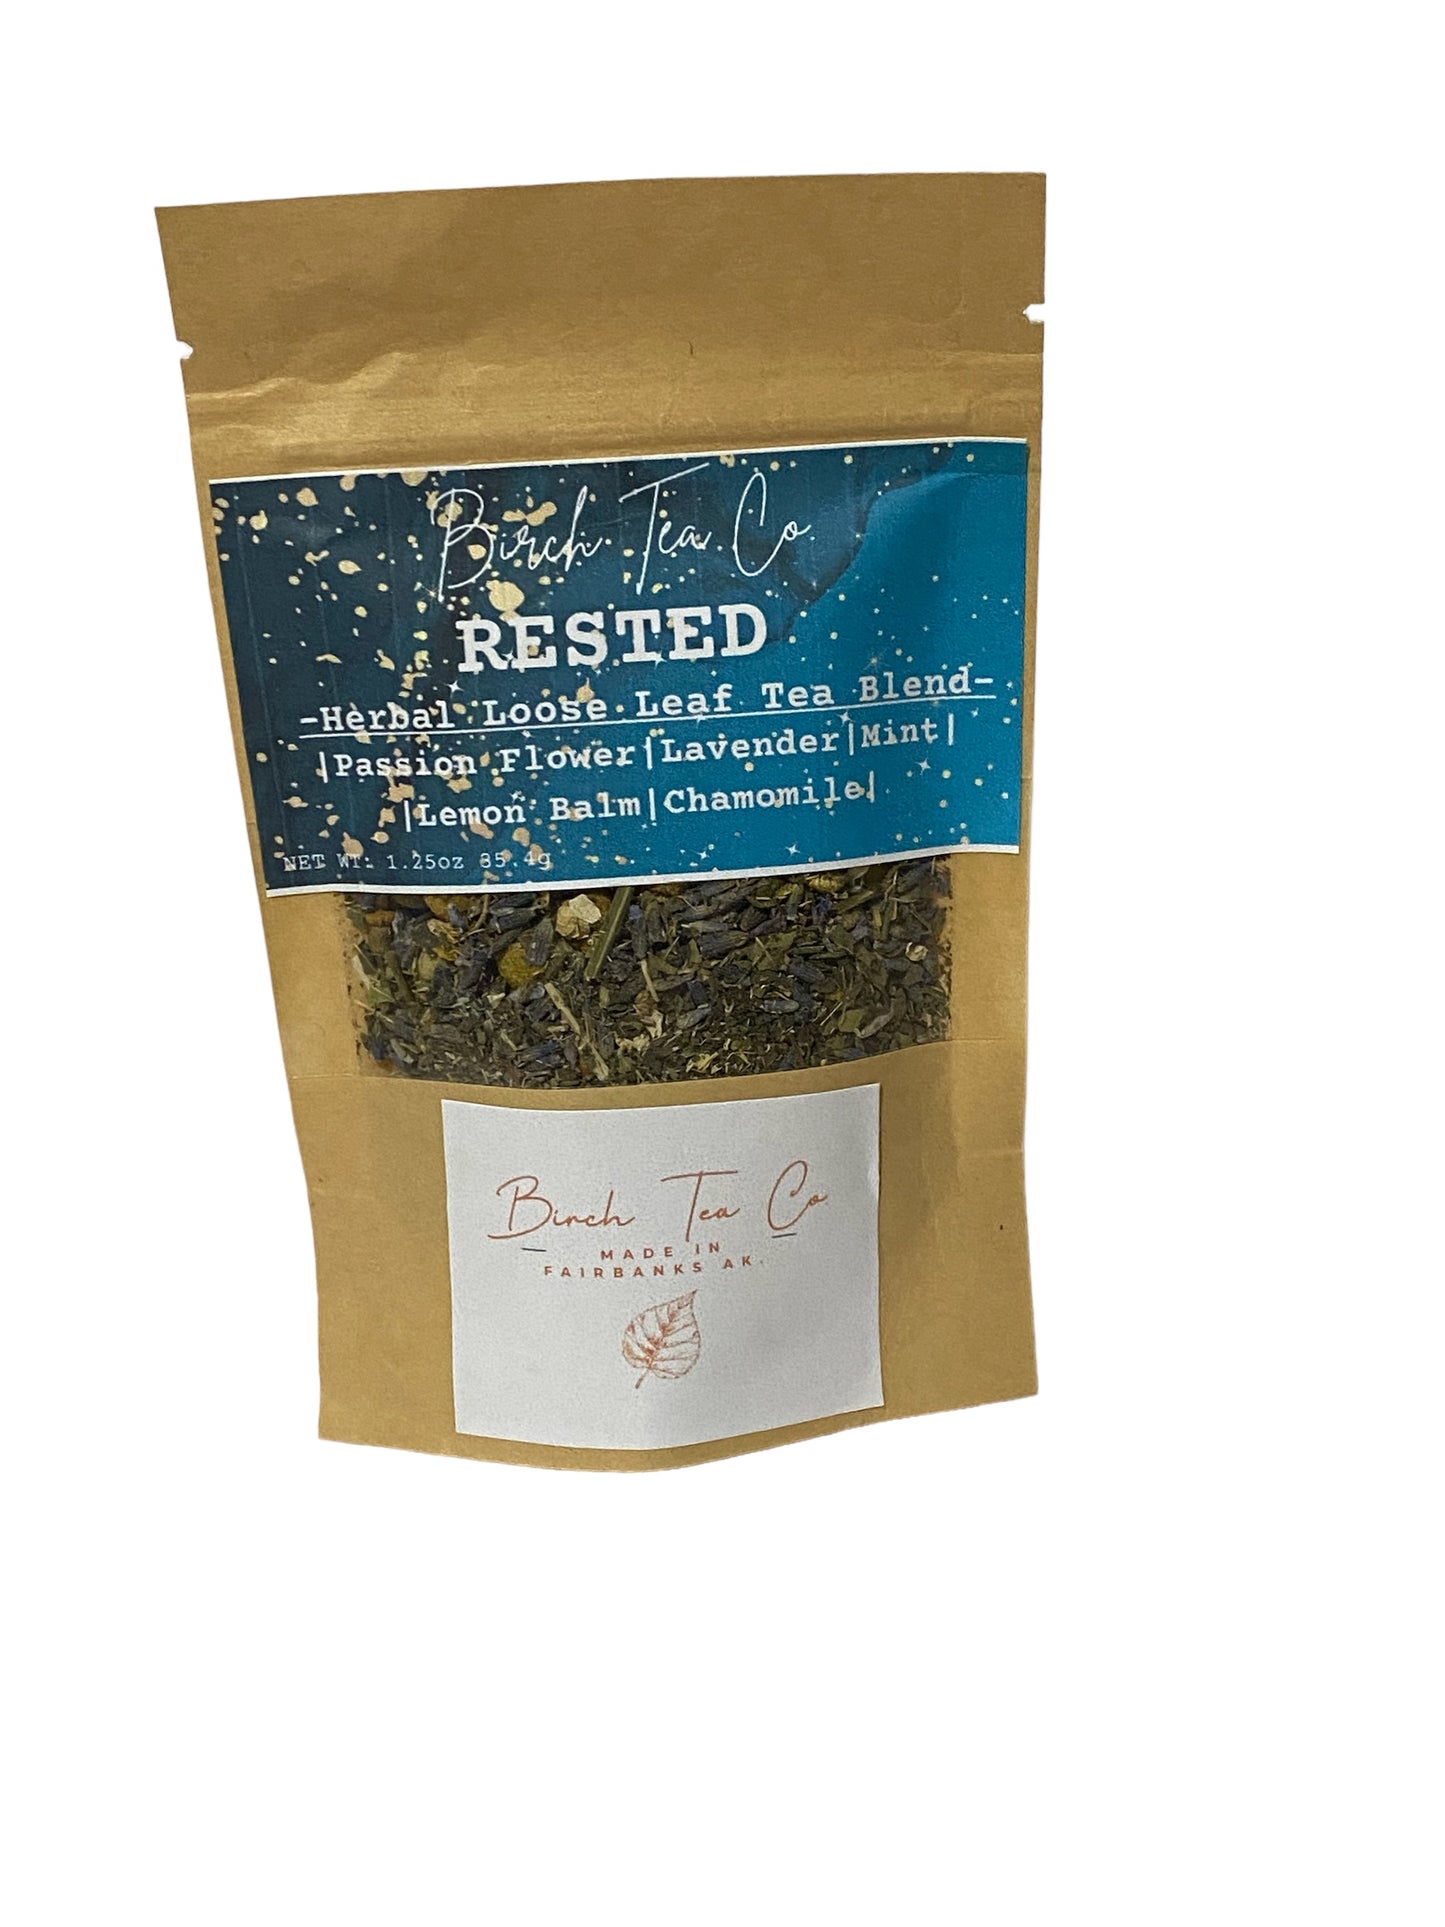 Tea, Birch Tea Co. Herbal Loose Leaf Tea Blend, Rested - 1.25oz